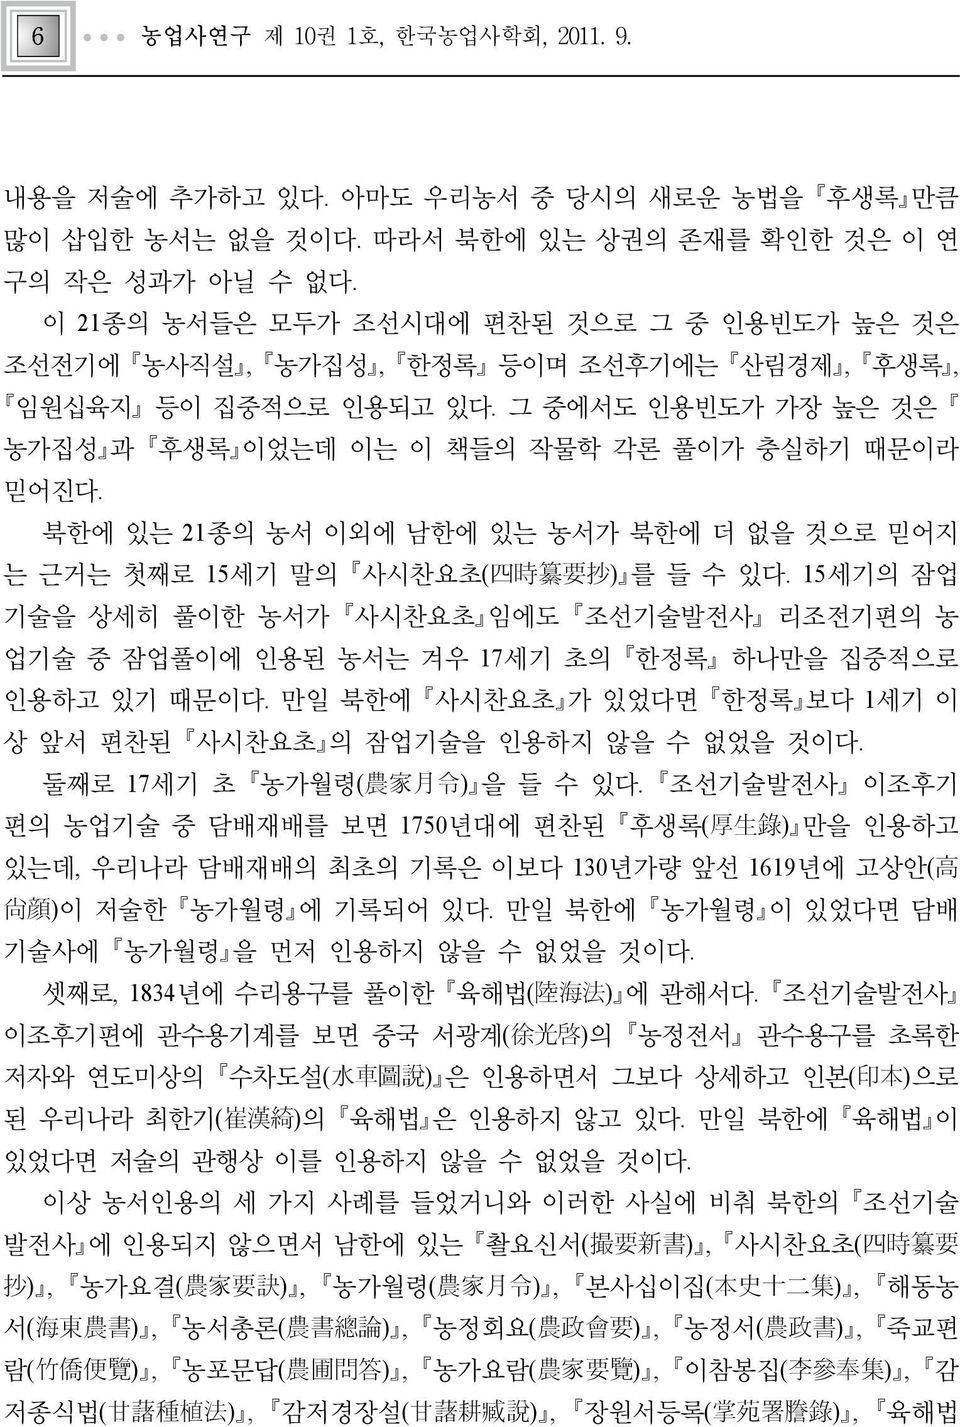 북한에 있는 21종의 농서 이외에 남한에 있는 농서가 북한에 더 없을 것으로 믿어지 는 근거는 첫째로 15세기 말의 사시찬요초( 四 時 纂 要 抄 ) 를 들 수 있다.